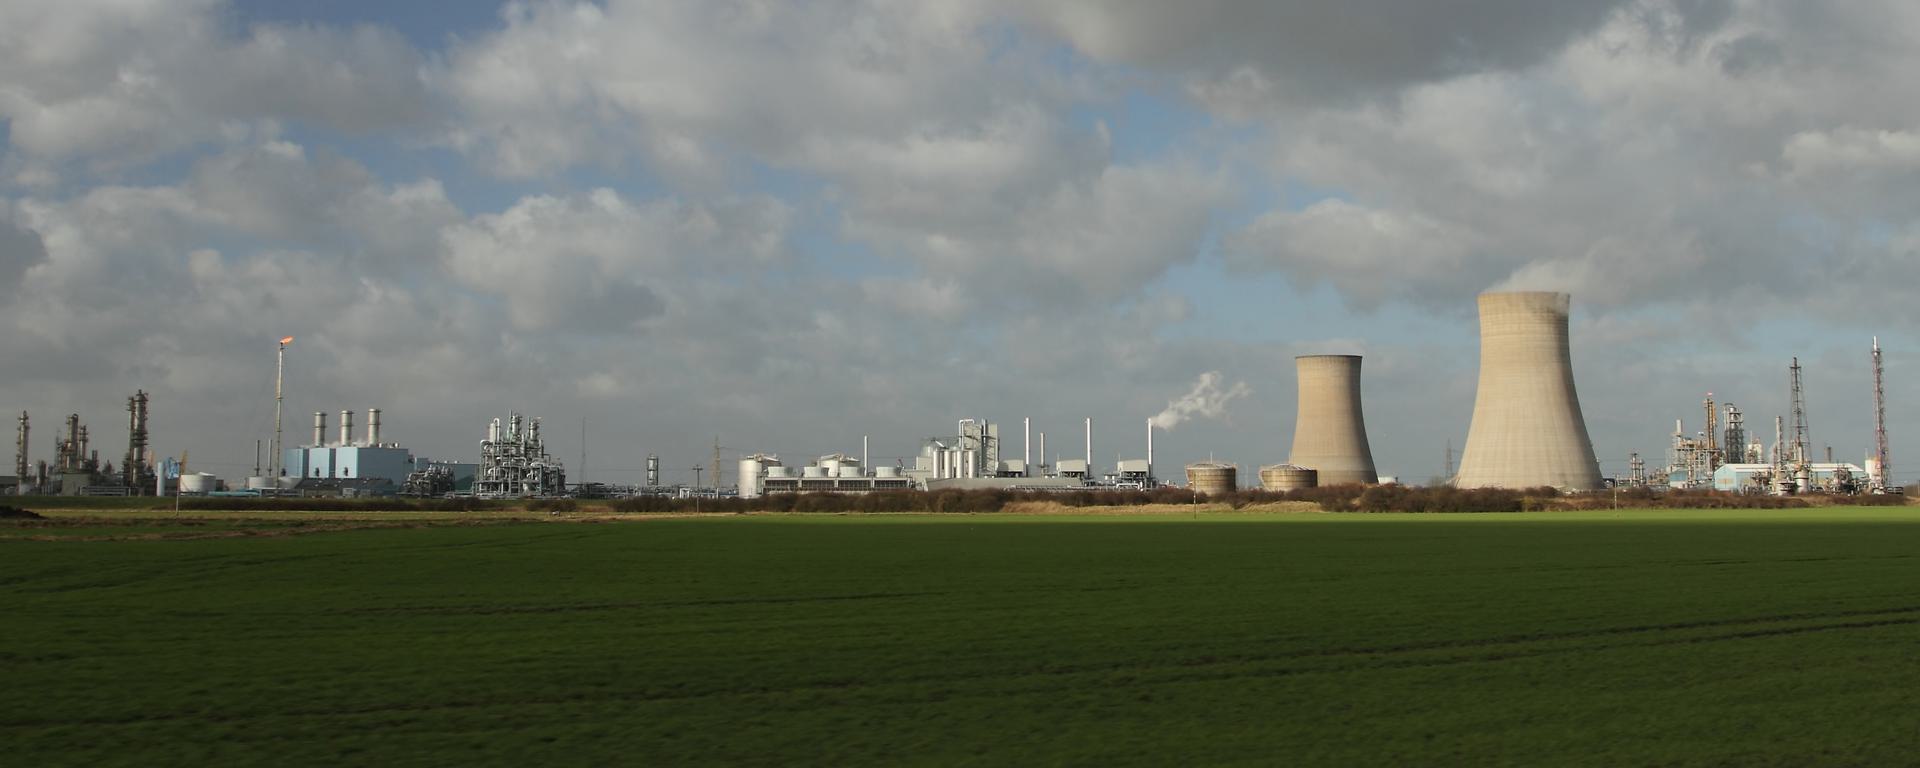 Petrochemical Factory near Hull